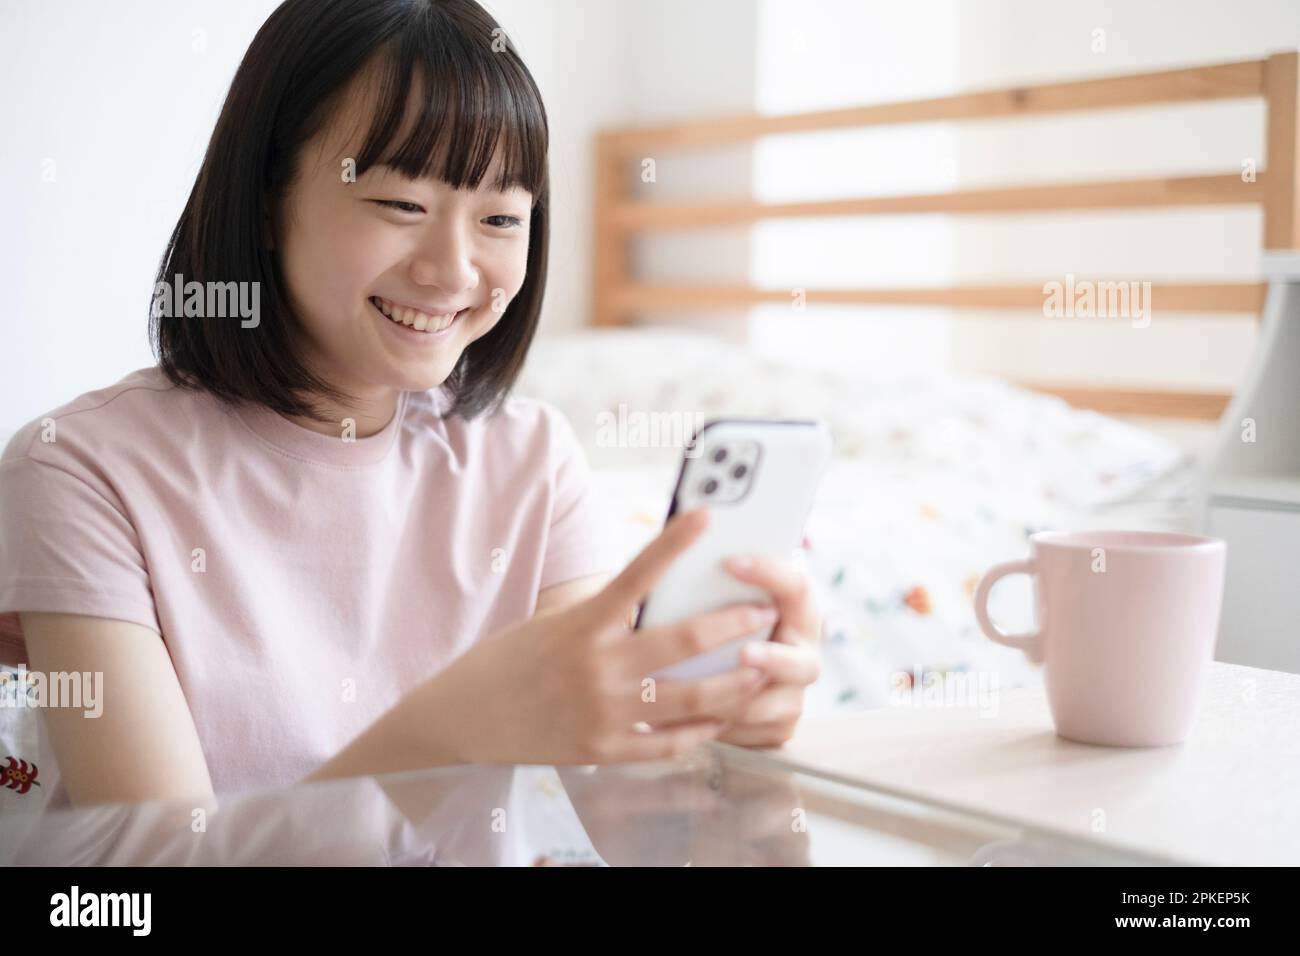 Ein Mädchen, das auf ein Smartphone schaut Stockfoto